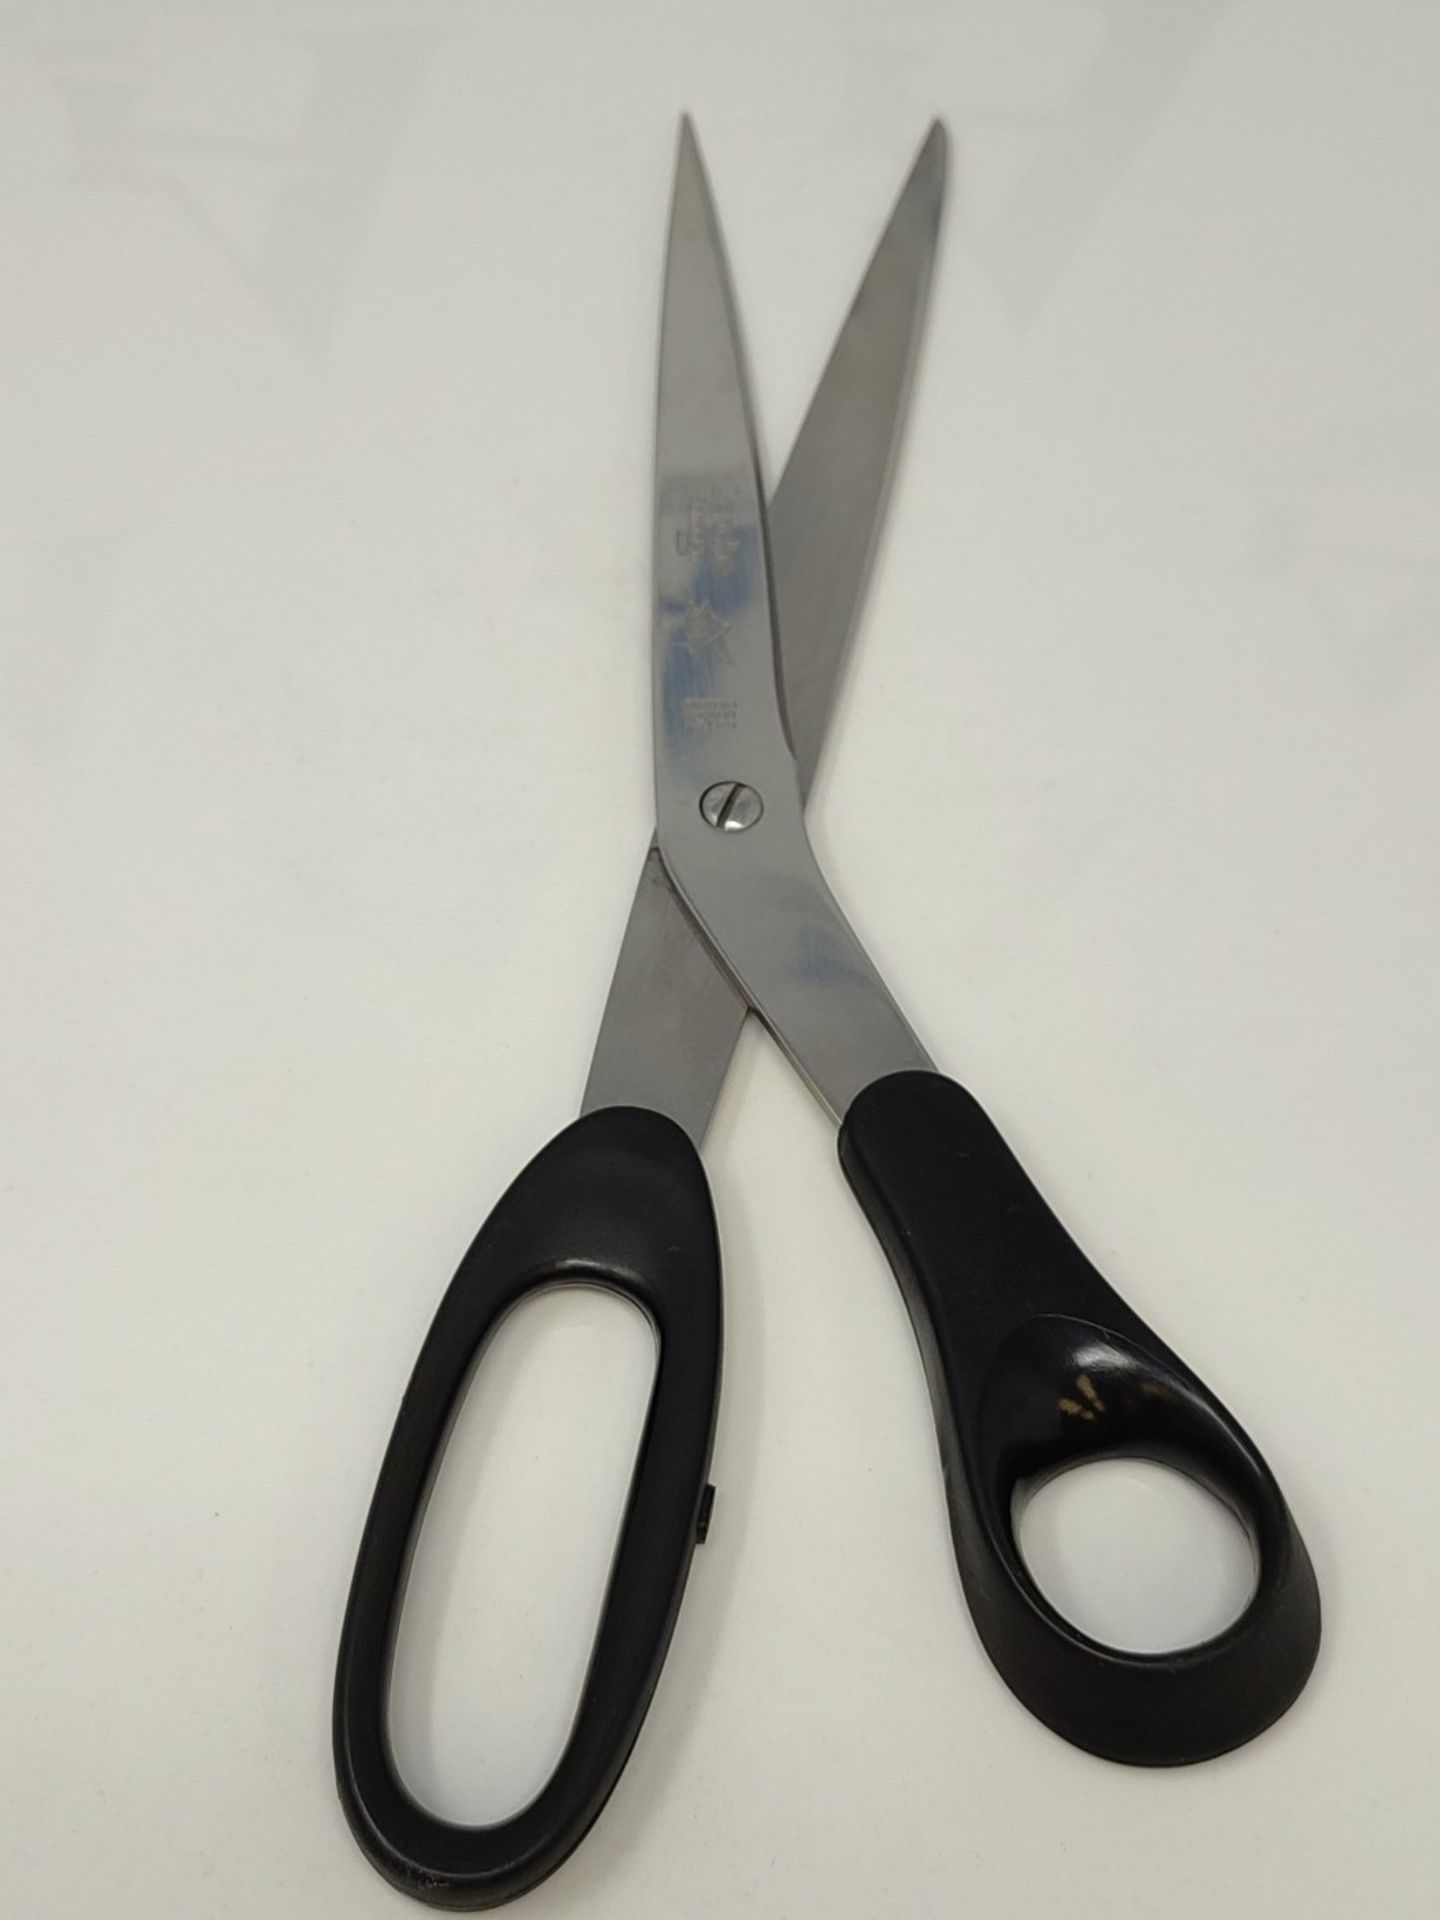 Professional Dahle Scissors - 25 cm, black - Image 2 of 4